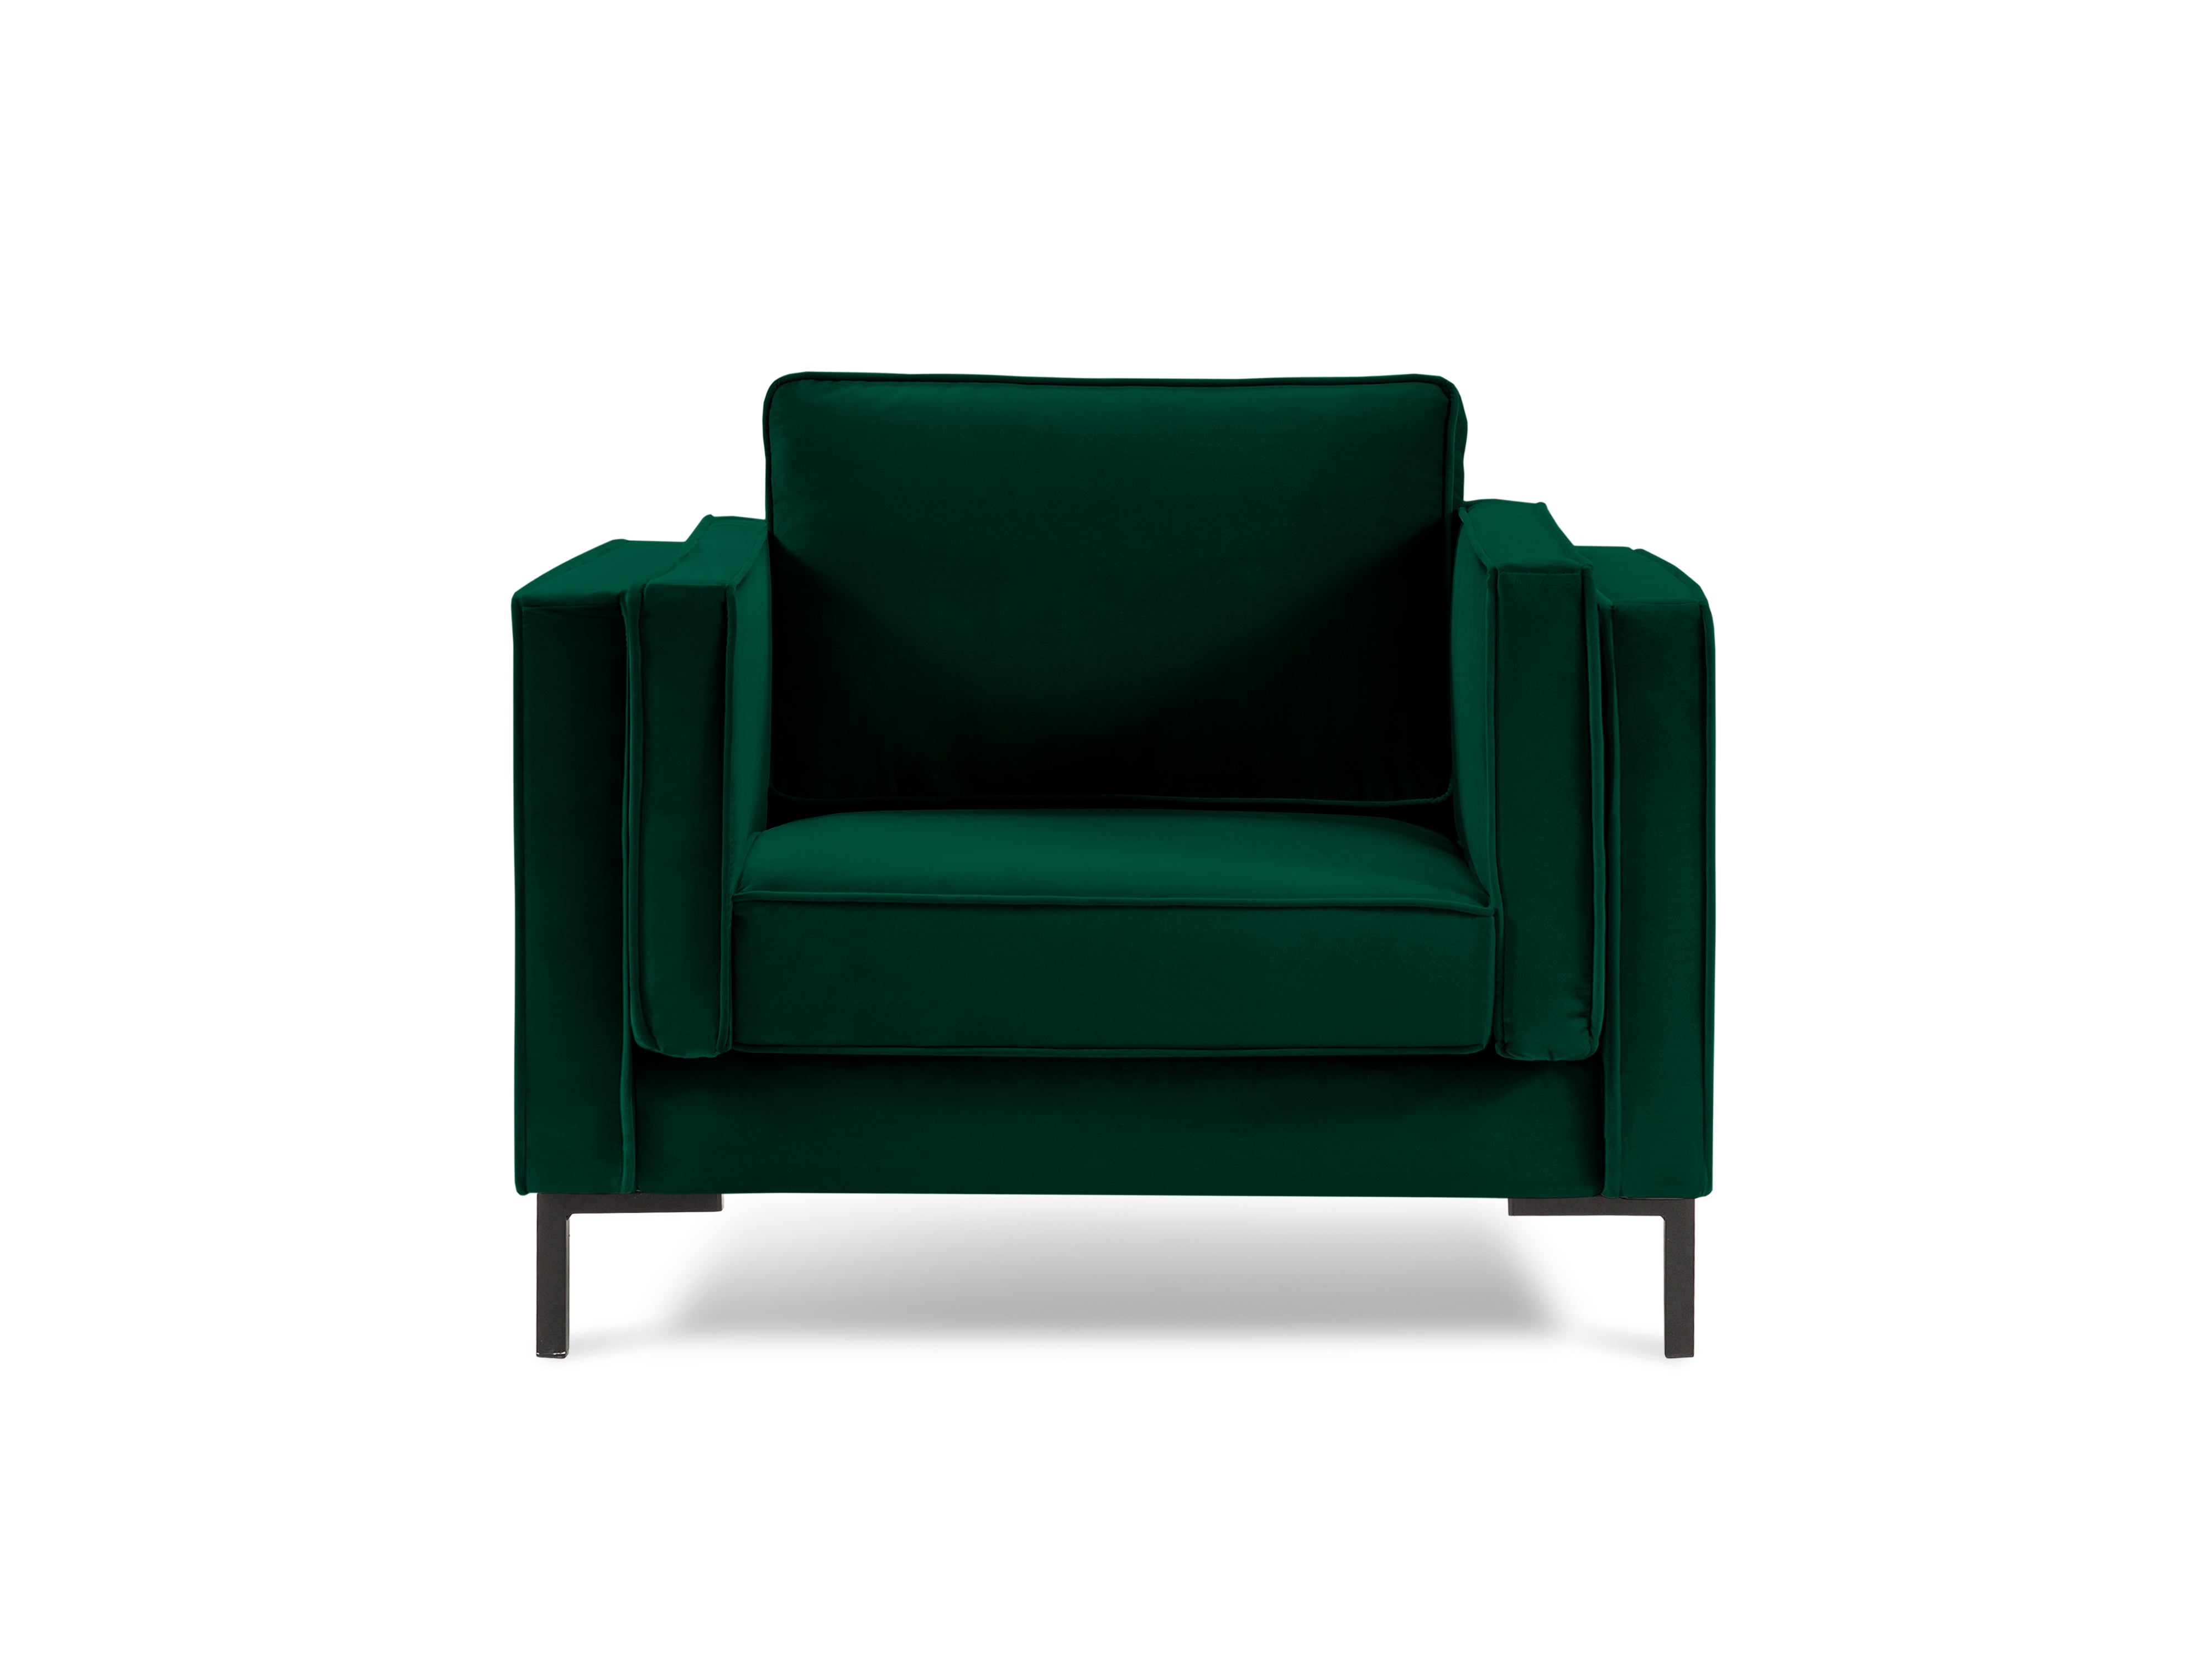 LUIS bottle green velvet armchair with black base